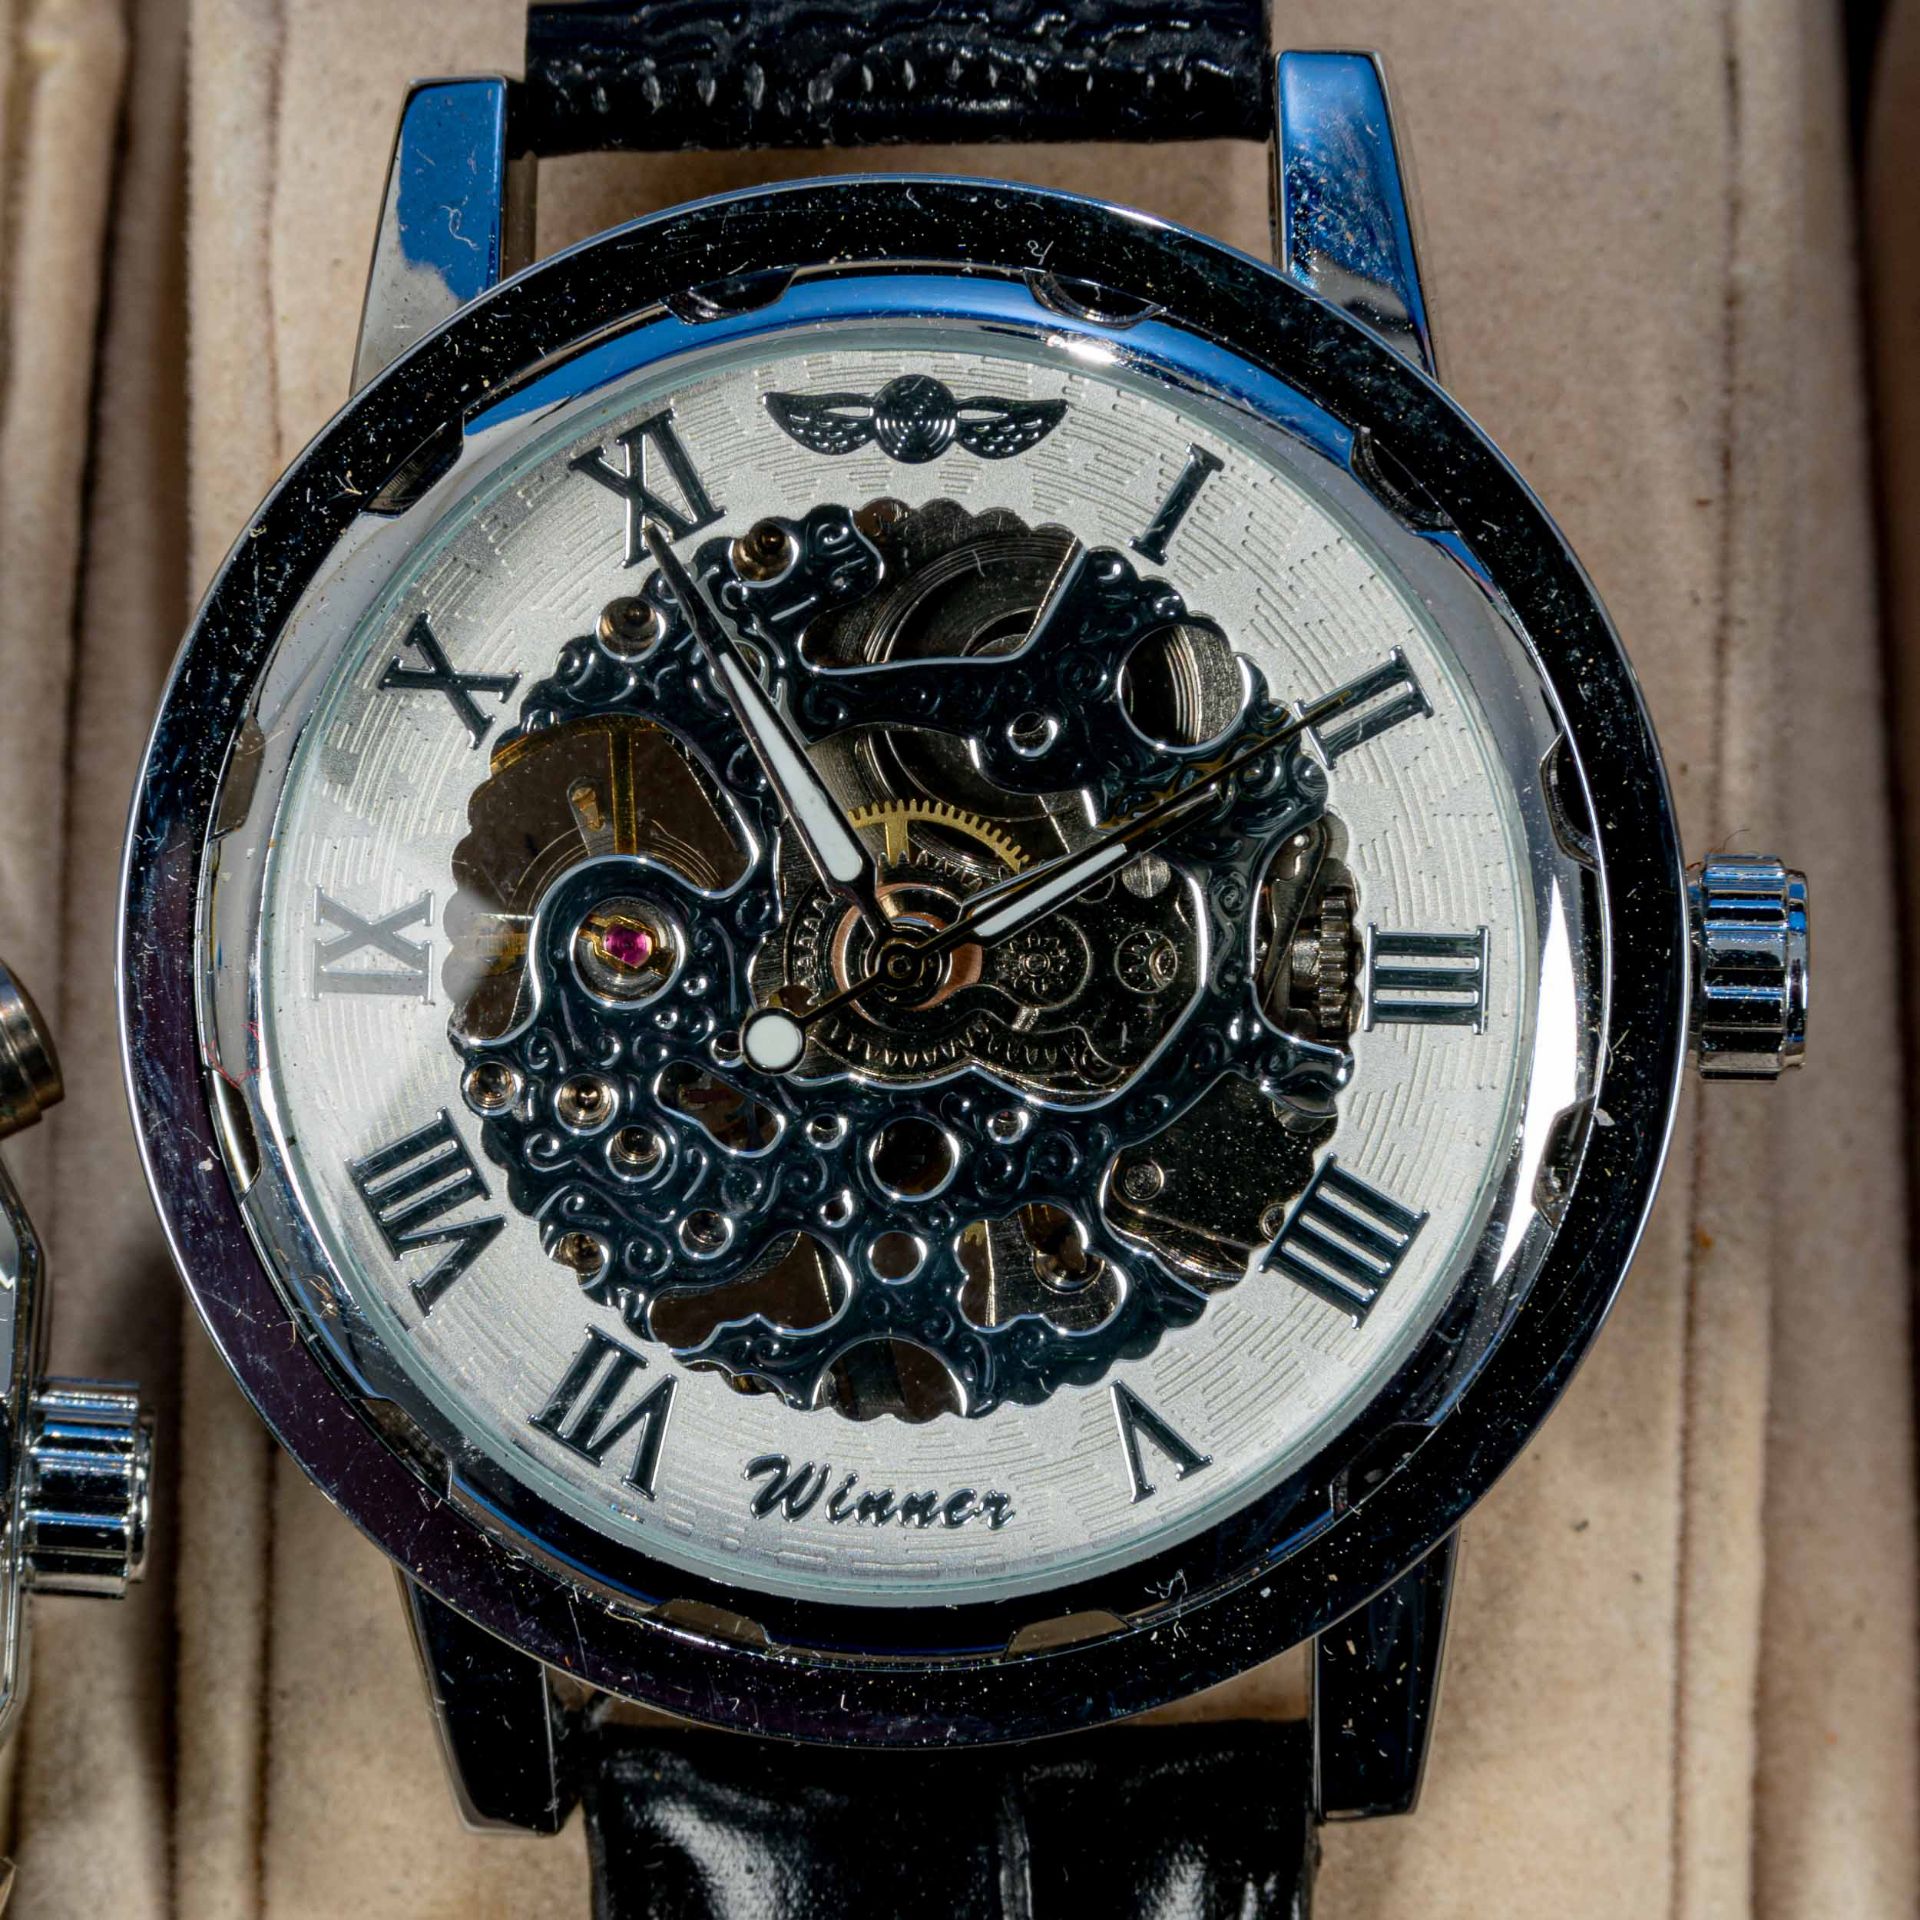 7teilige Uhrensammlung, u. a. der Marke Swatch; versch. Alter, Größen, Materialien, Hersteller, Wer - Bild 4 aus 8